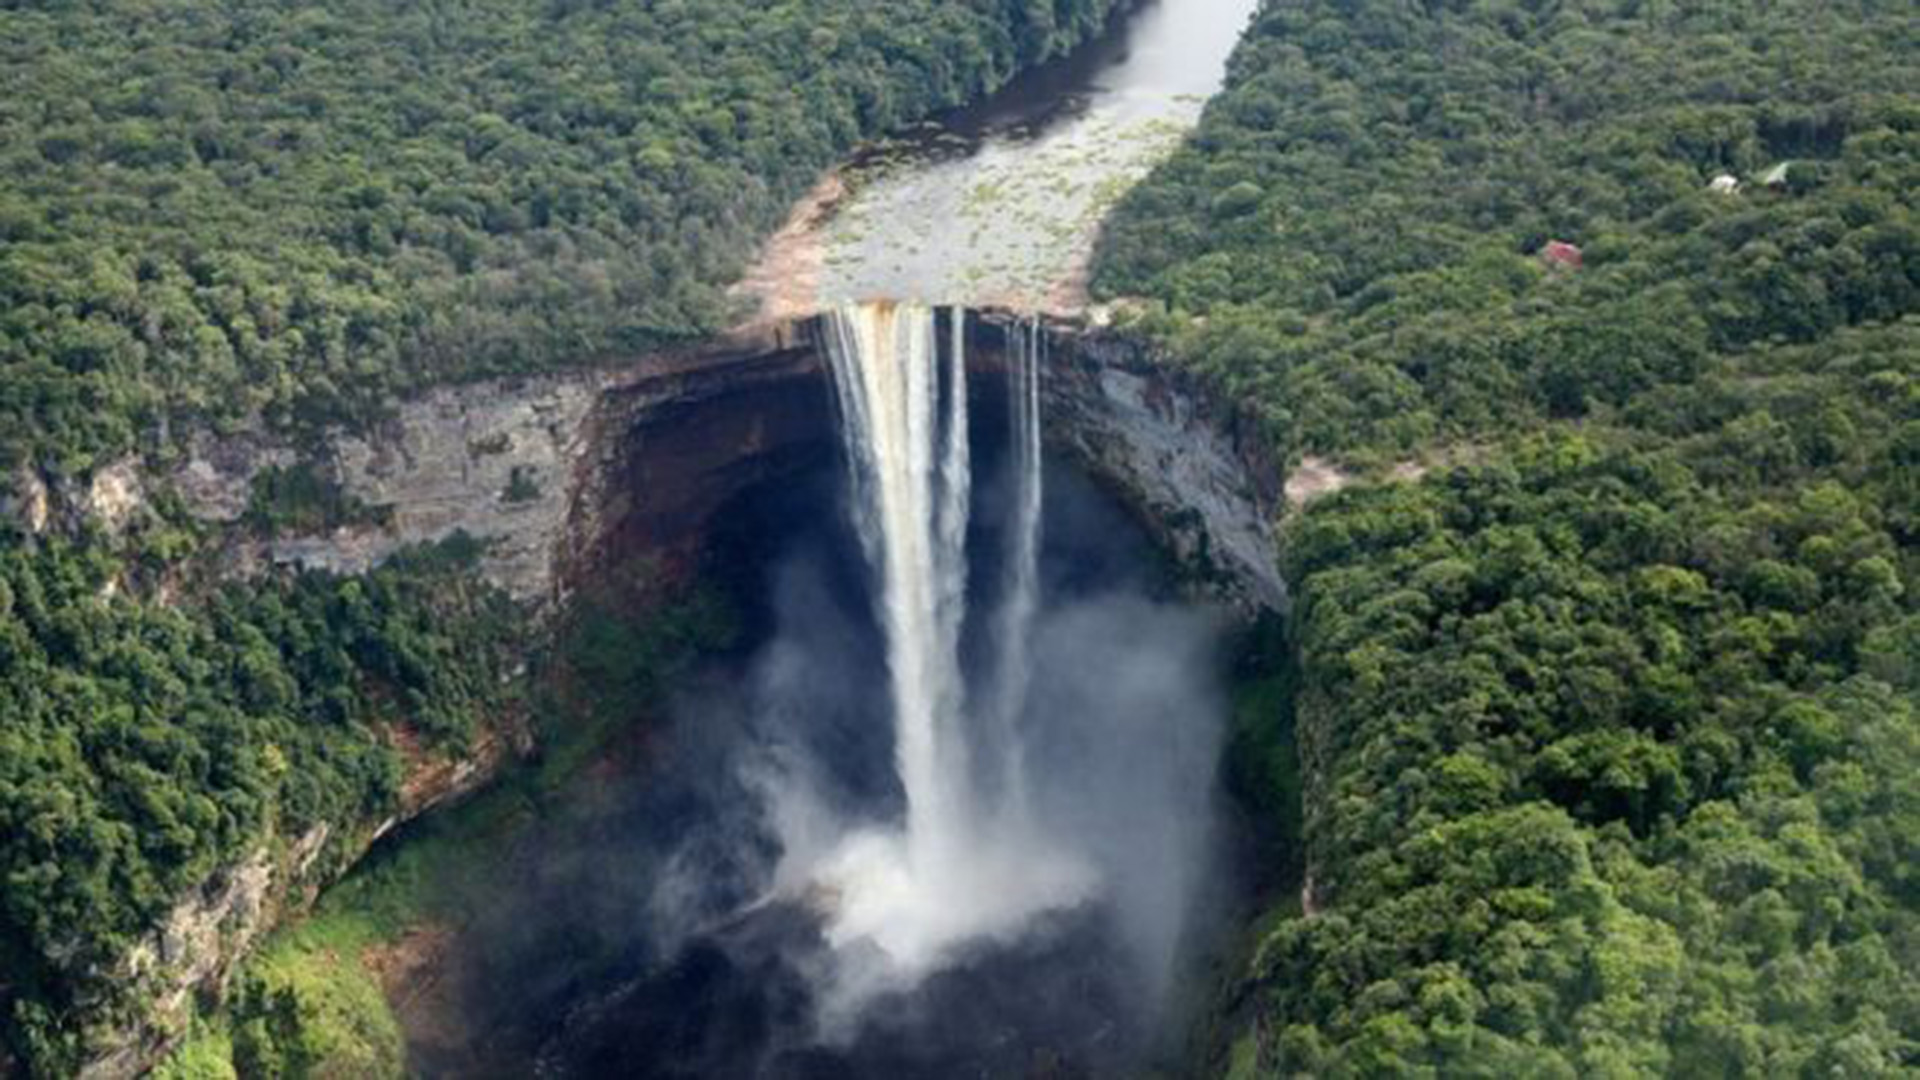 Las cataratas Kaieteur están ubicadas en la zona en disputa, conocida por lo venezolanos como Guyana Esequiba